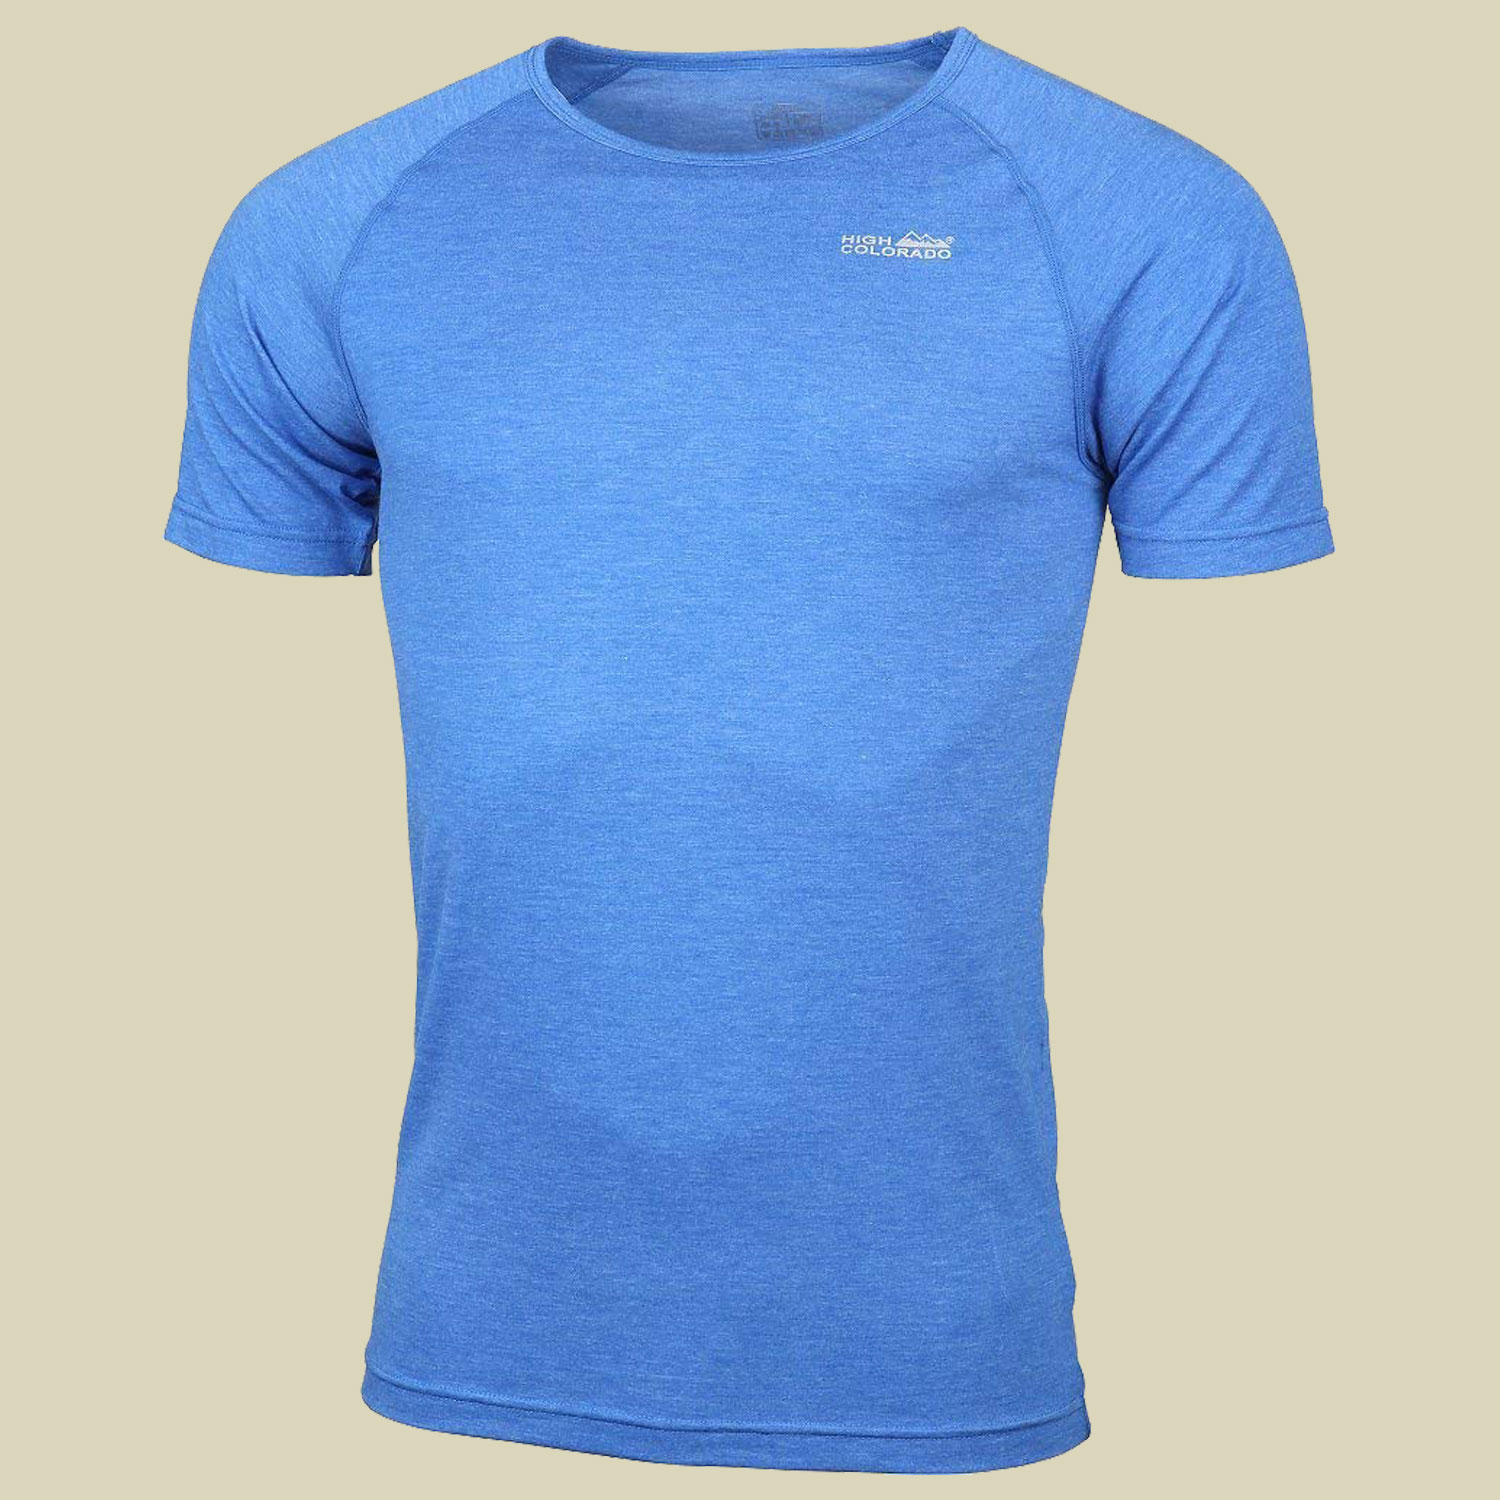 Bergen ½ Arm-Shirt Men Größe XL  Farbe 5307 blau melange